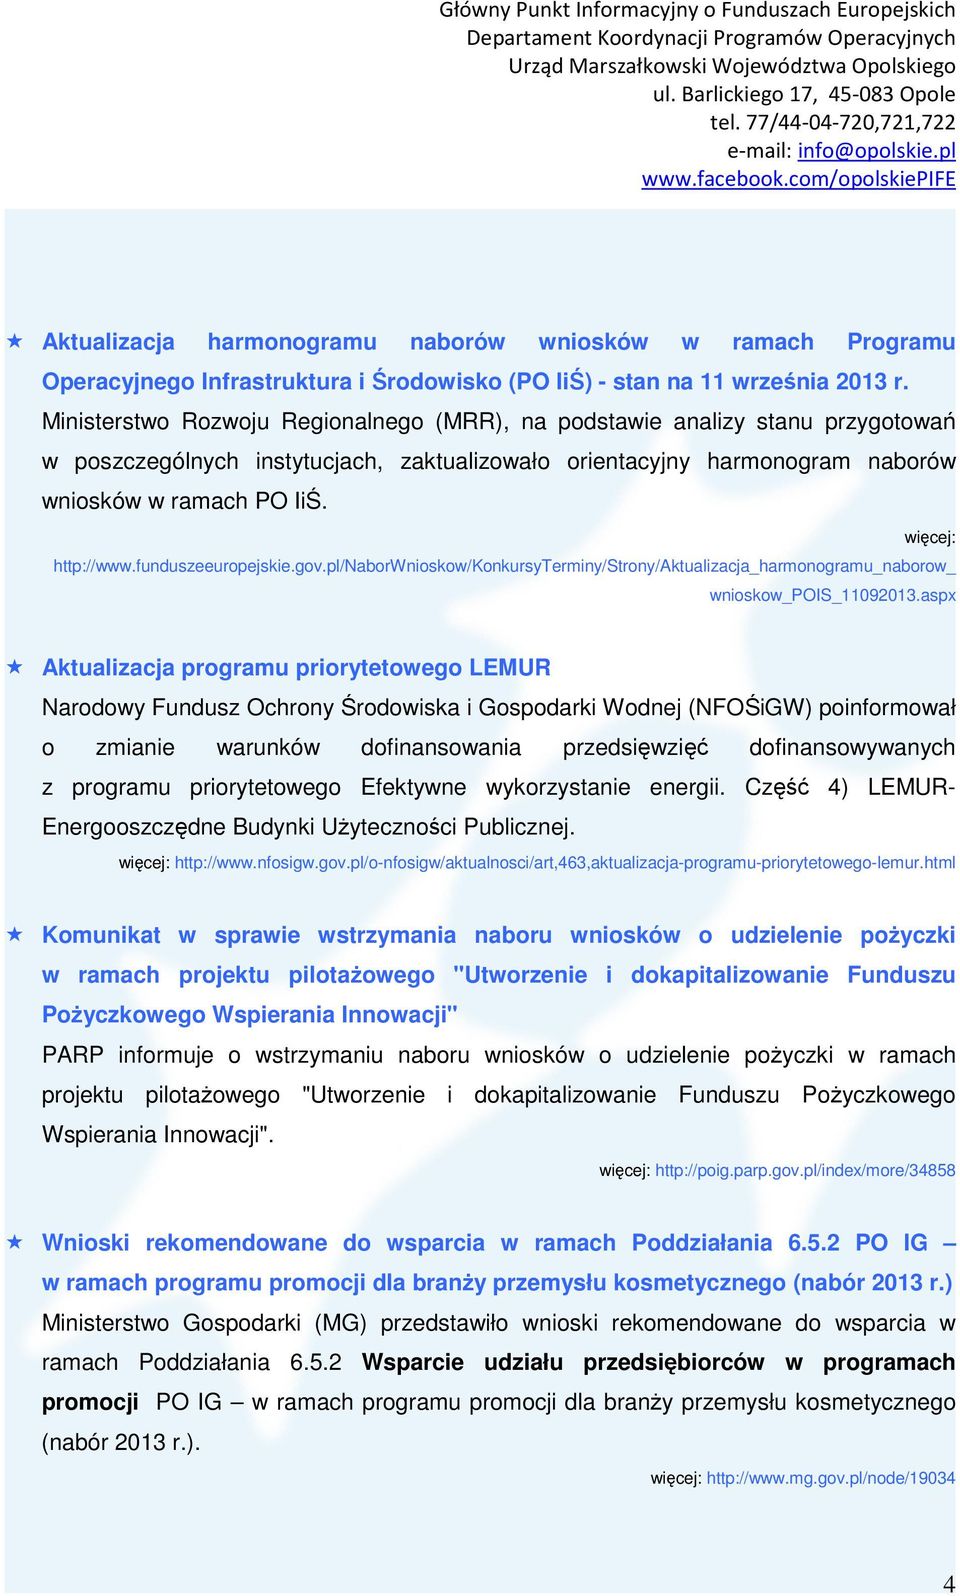 funduszeeuropejskie.gov.pl/naborwnioskow/konkursyterminy/strony/aktualizacja_harmonogramu_naborow_ wnioskow_pois_11092013.